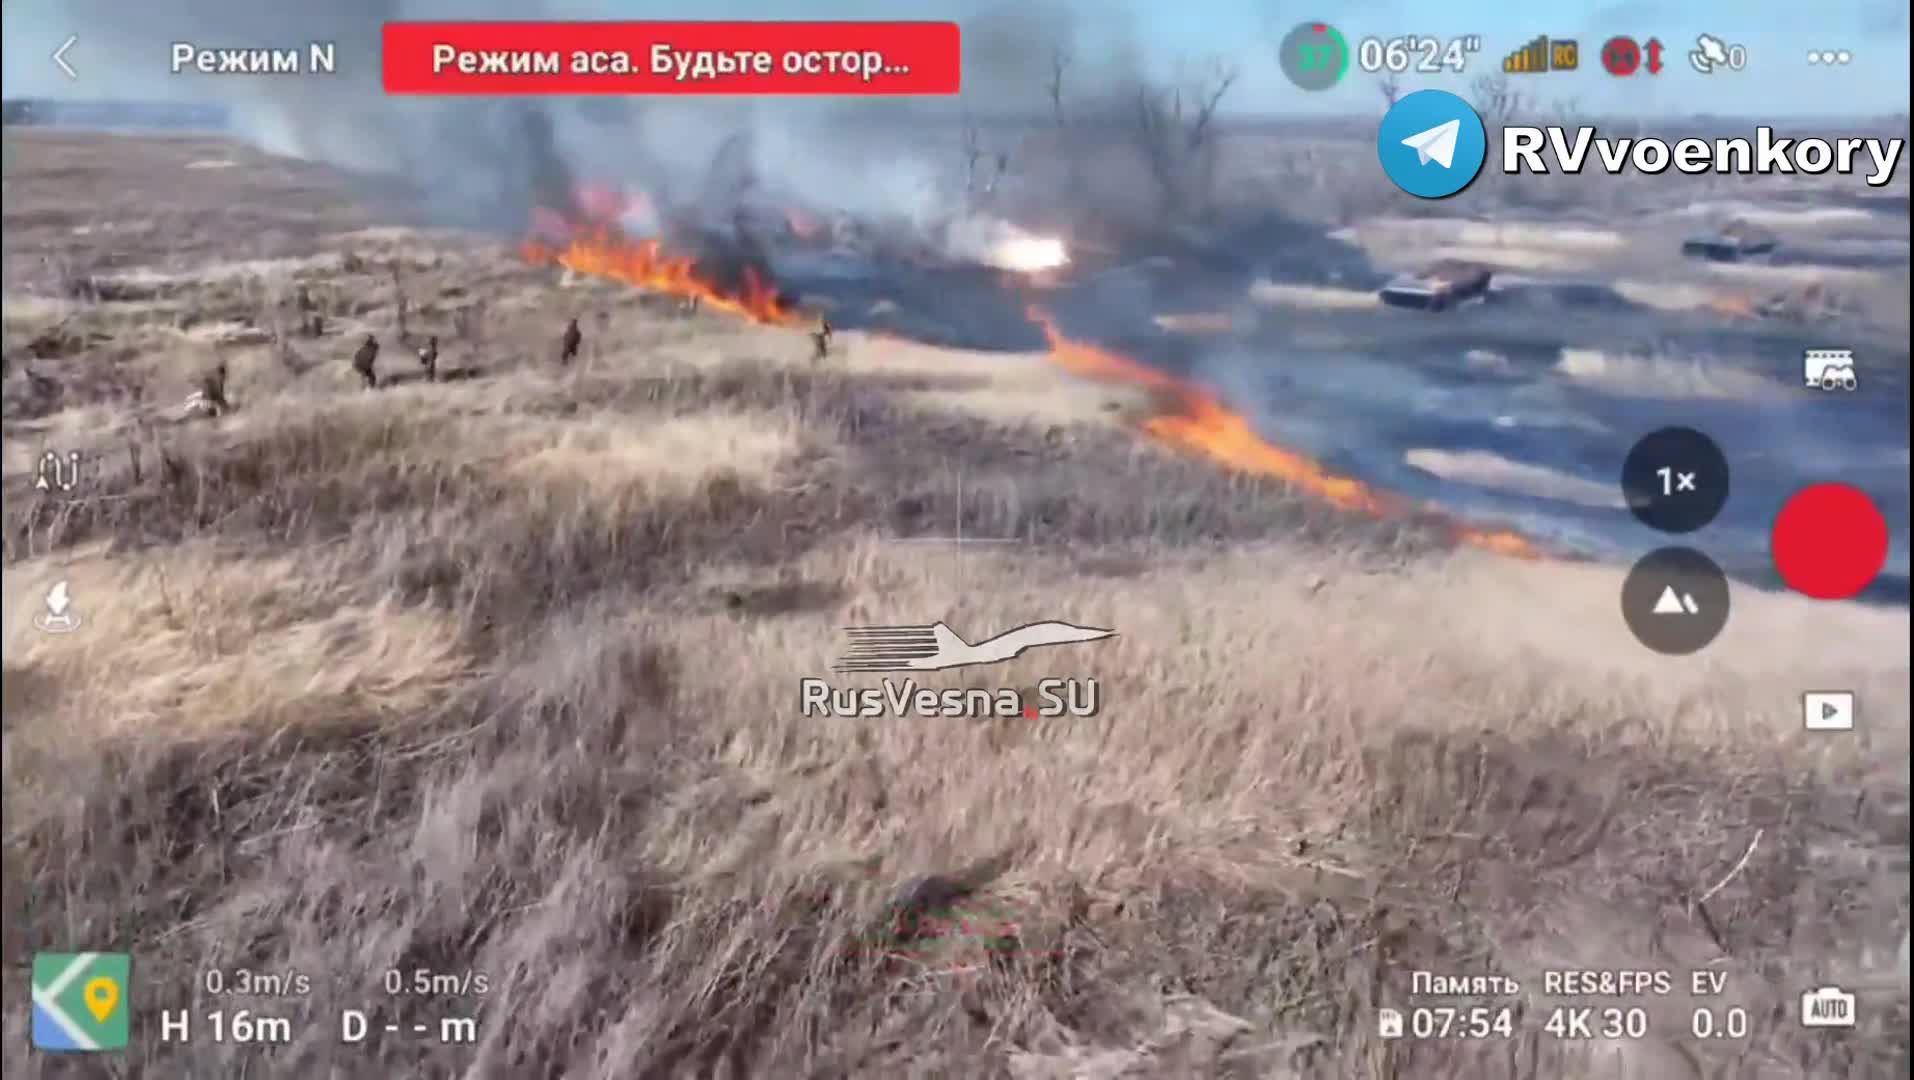 Thế giới - Hướng Donetsk, những trận chiến ác liệt đã nổ ra, Nga giành lợi thế